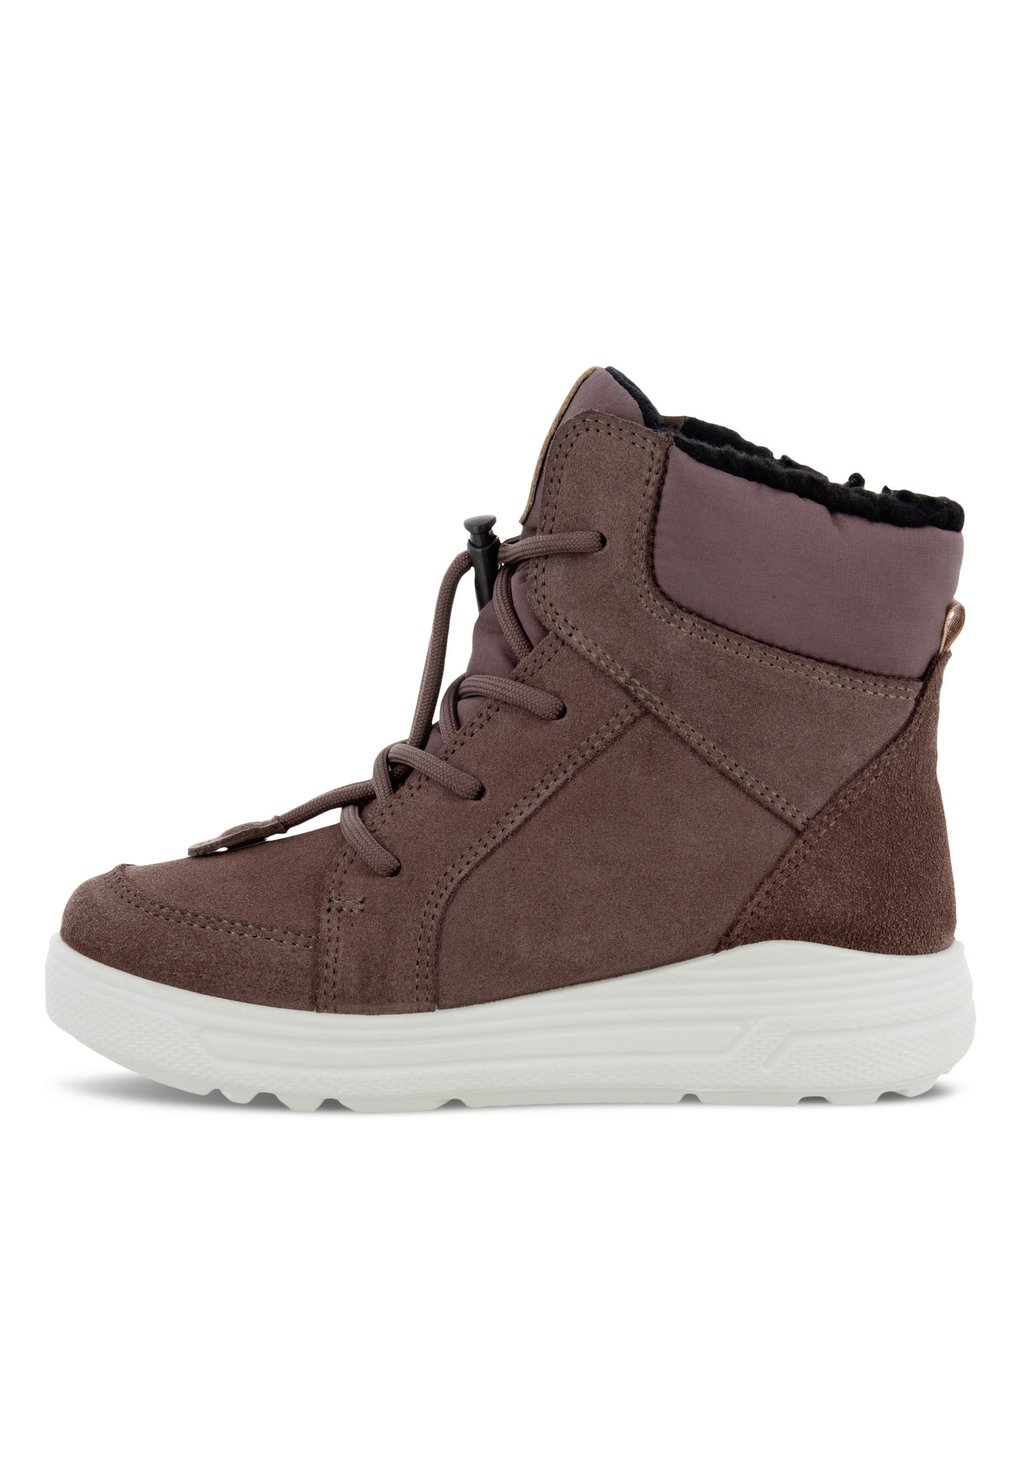 Зимние ботинки Urban Snowboarder ECCO, коричневый